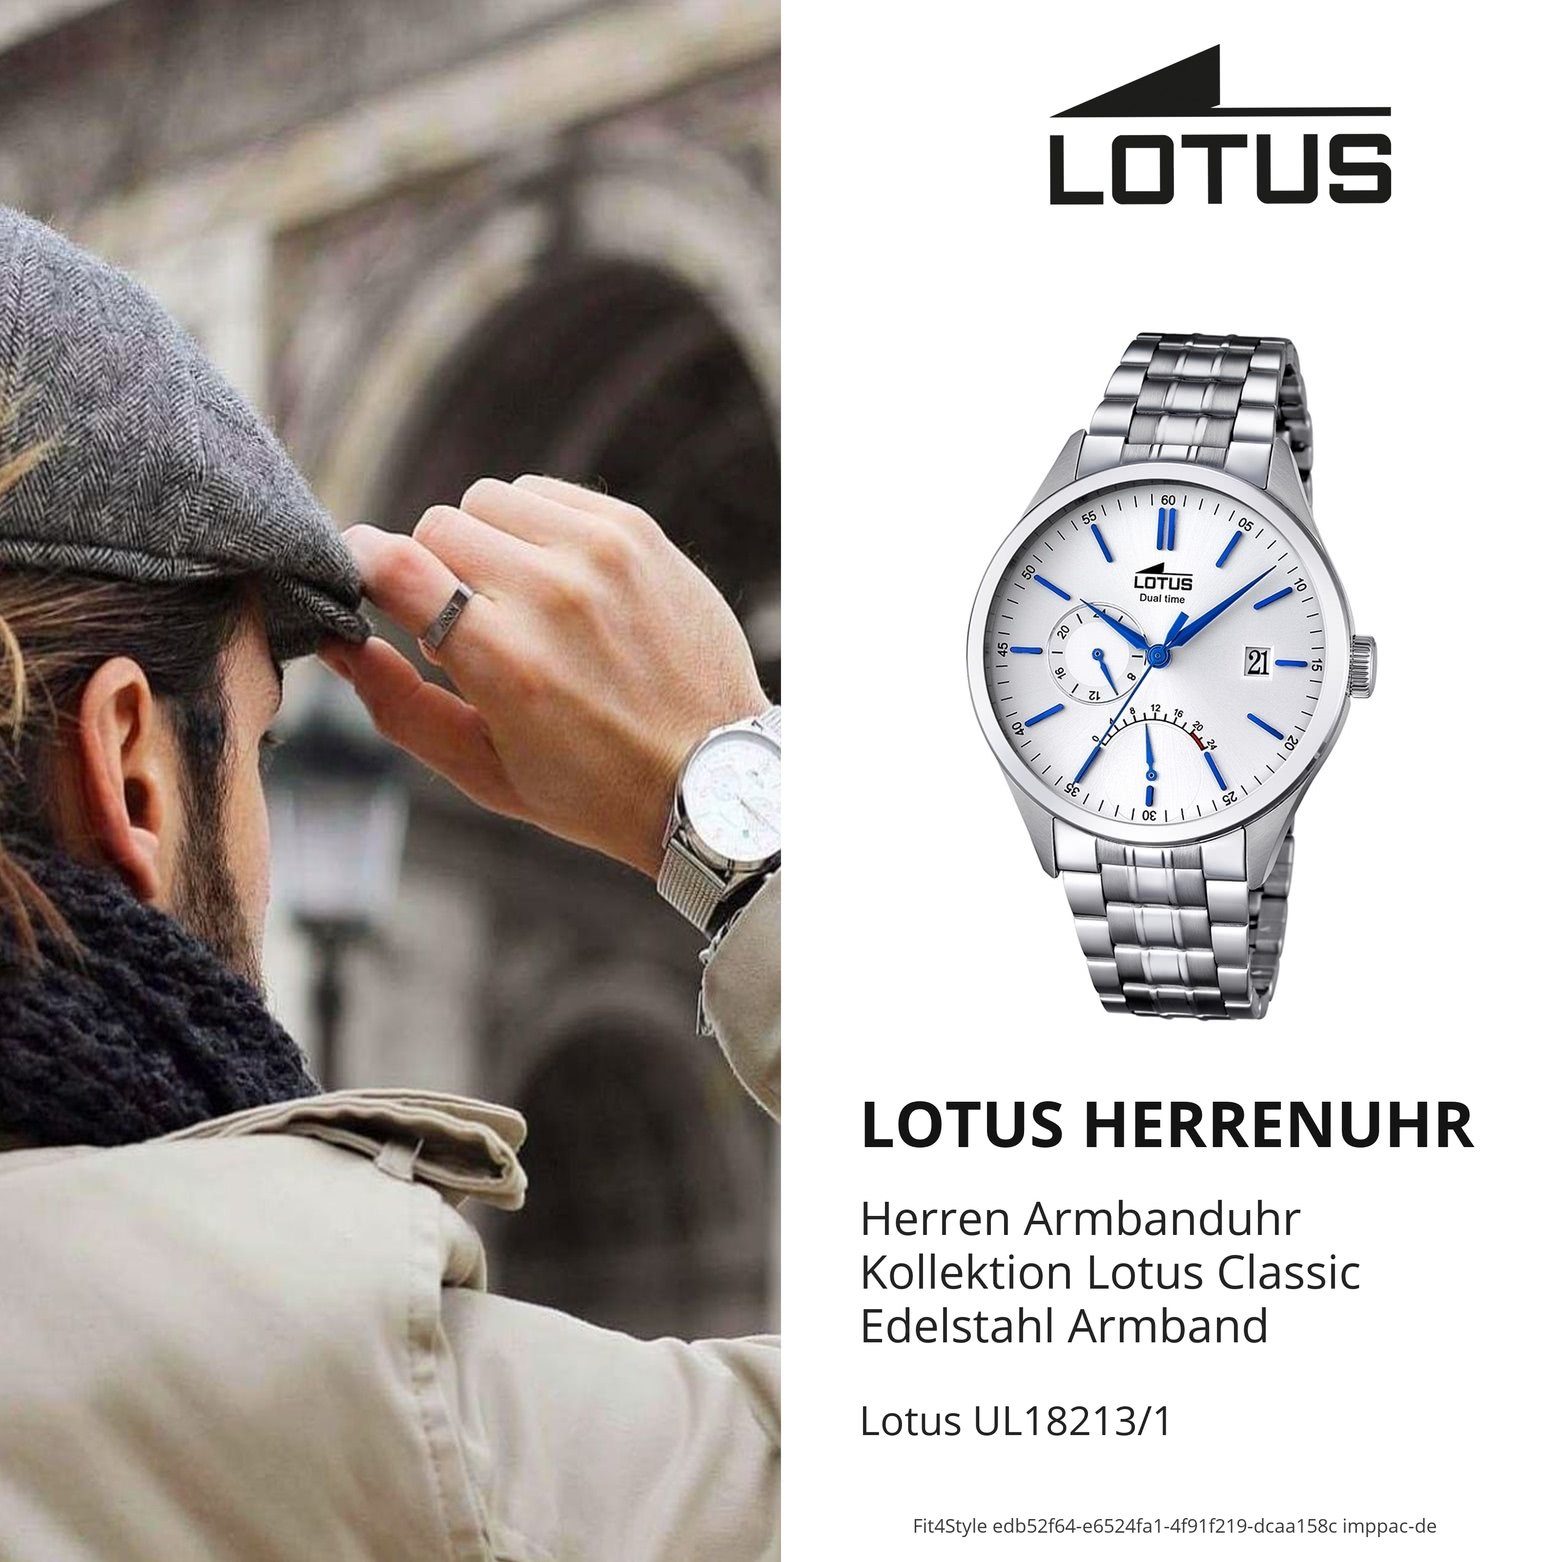 Lotus Multifunktionsuhr Armbanduhr (ca. 42mm), Uhr rund, L18213/1, Herren Elegant Herren groß Edelstahlarmband Lotus silber